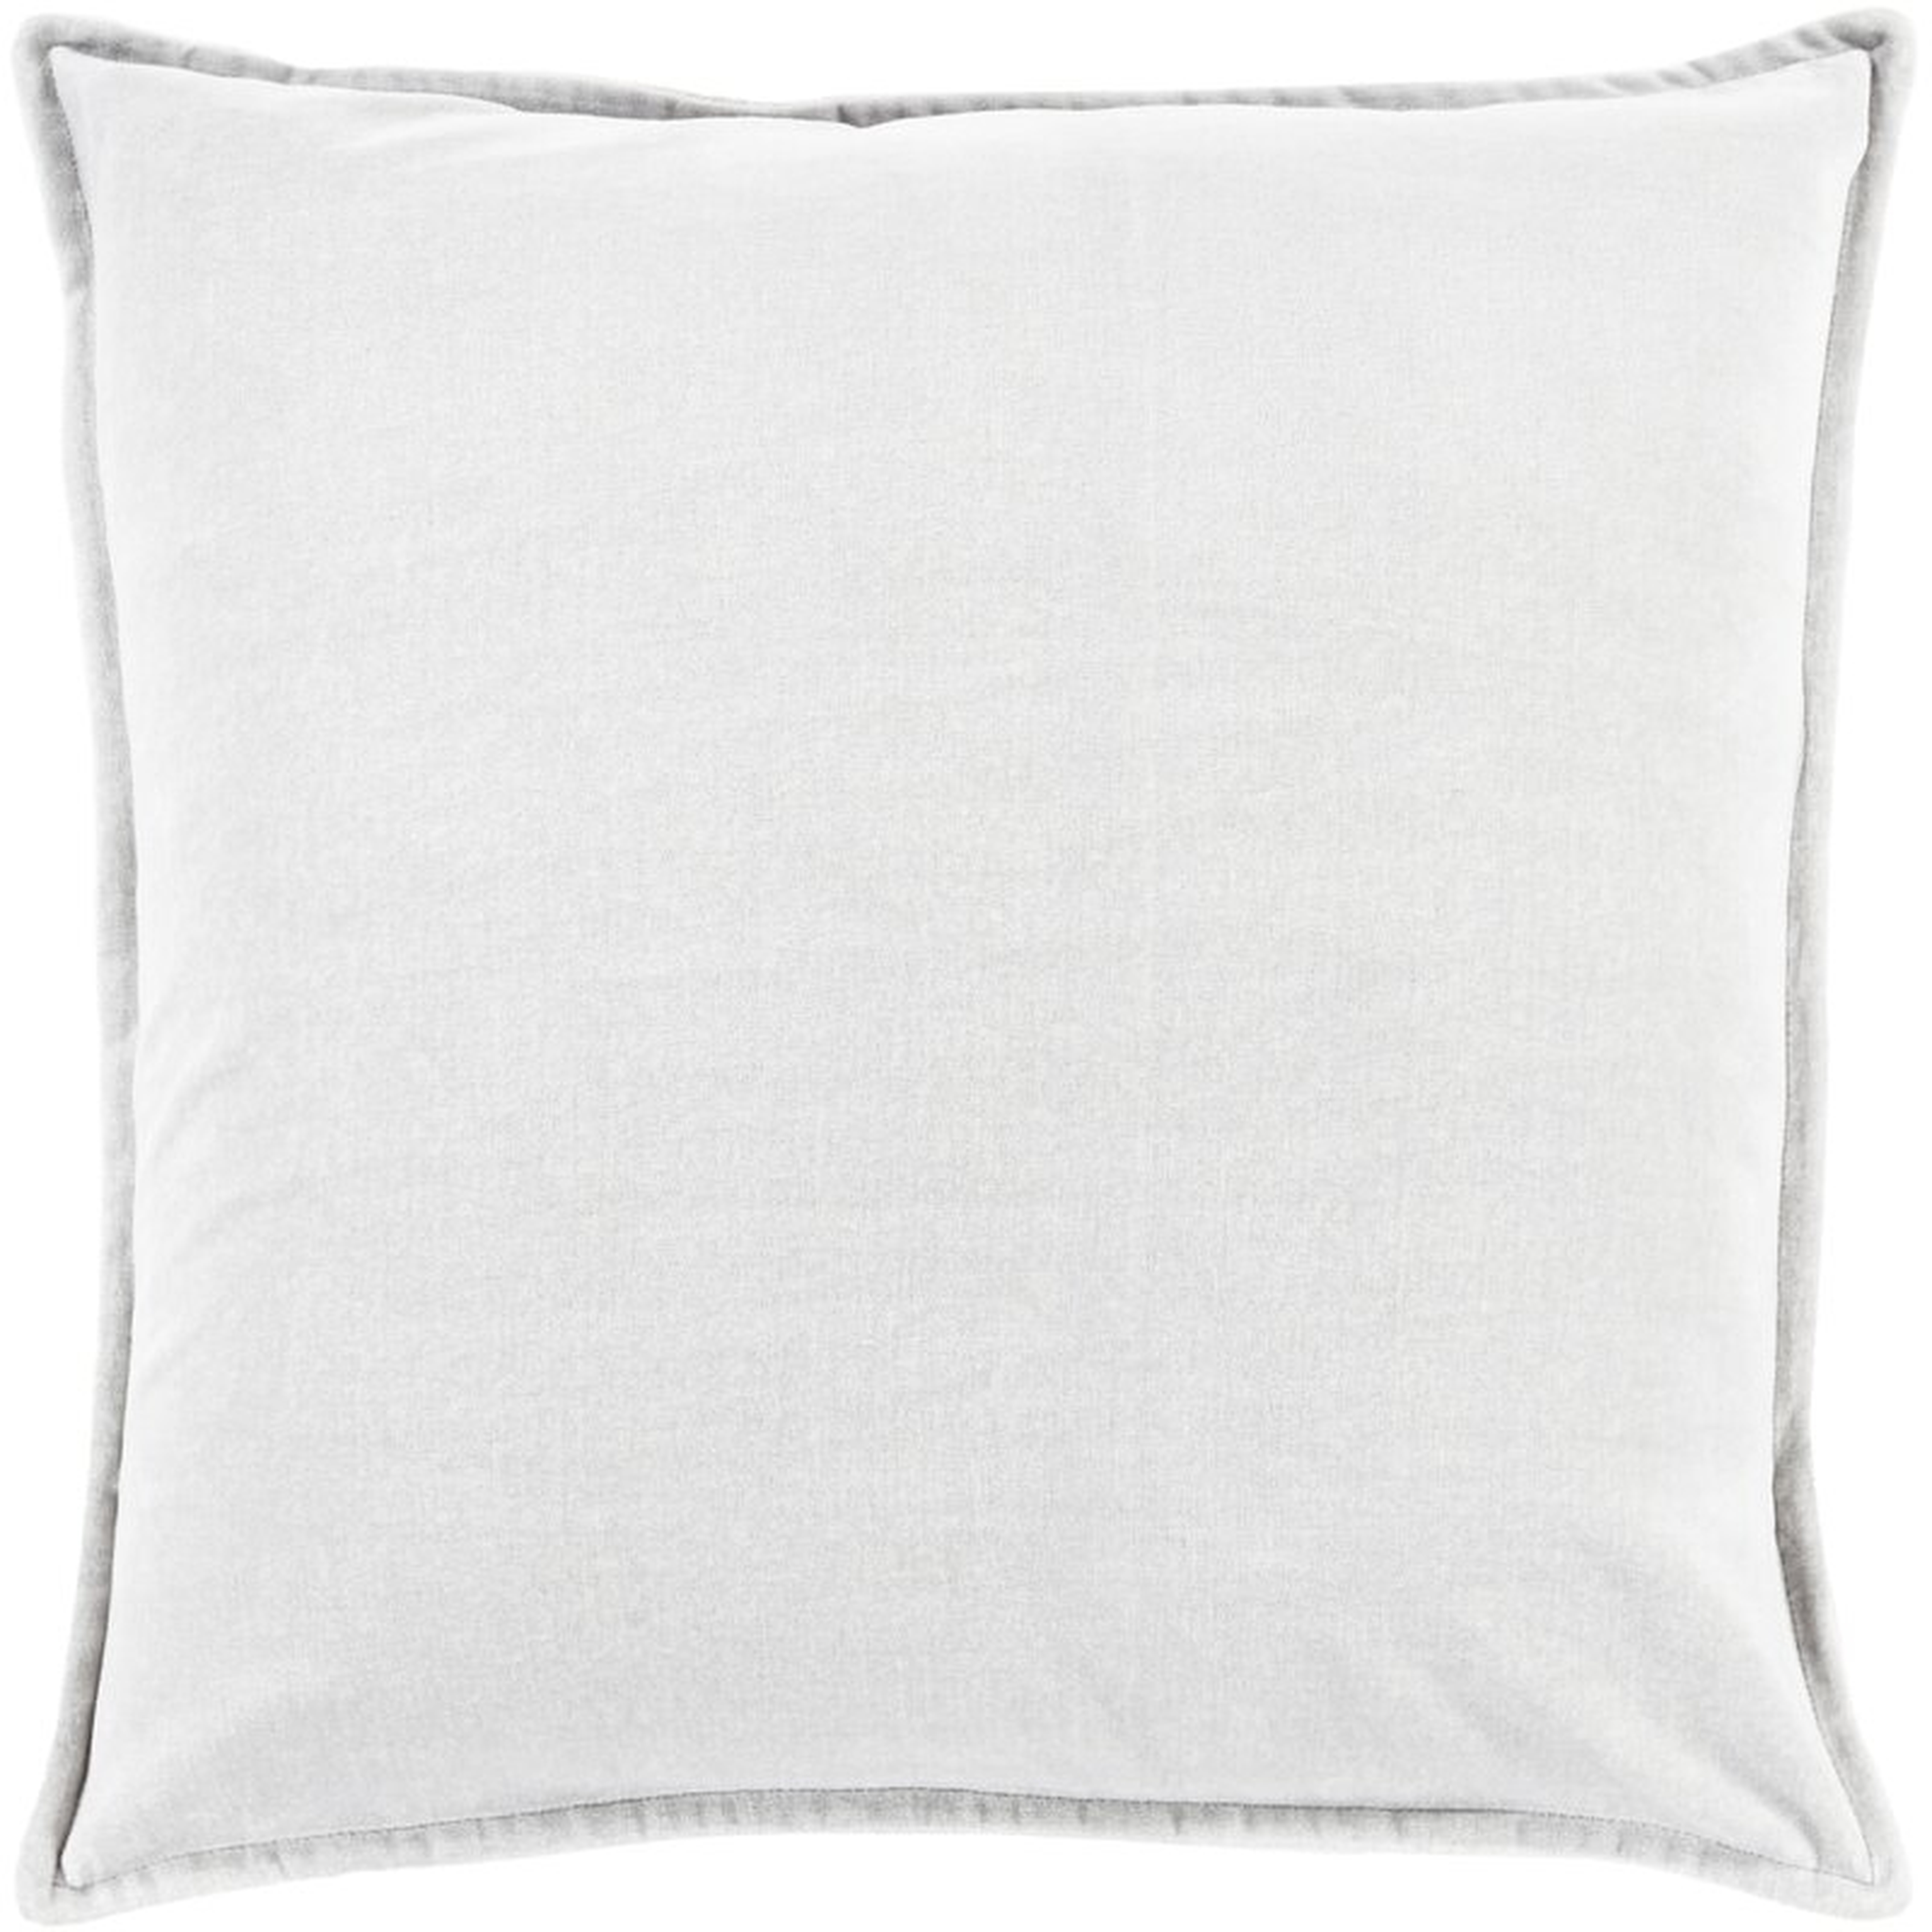 Cotton Throw Pillow Cover - Wayfair